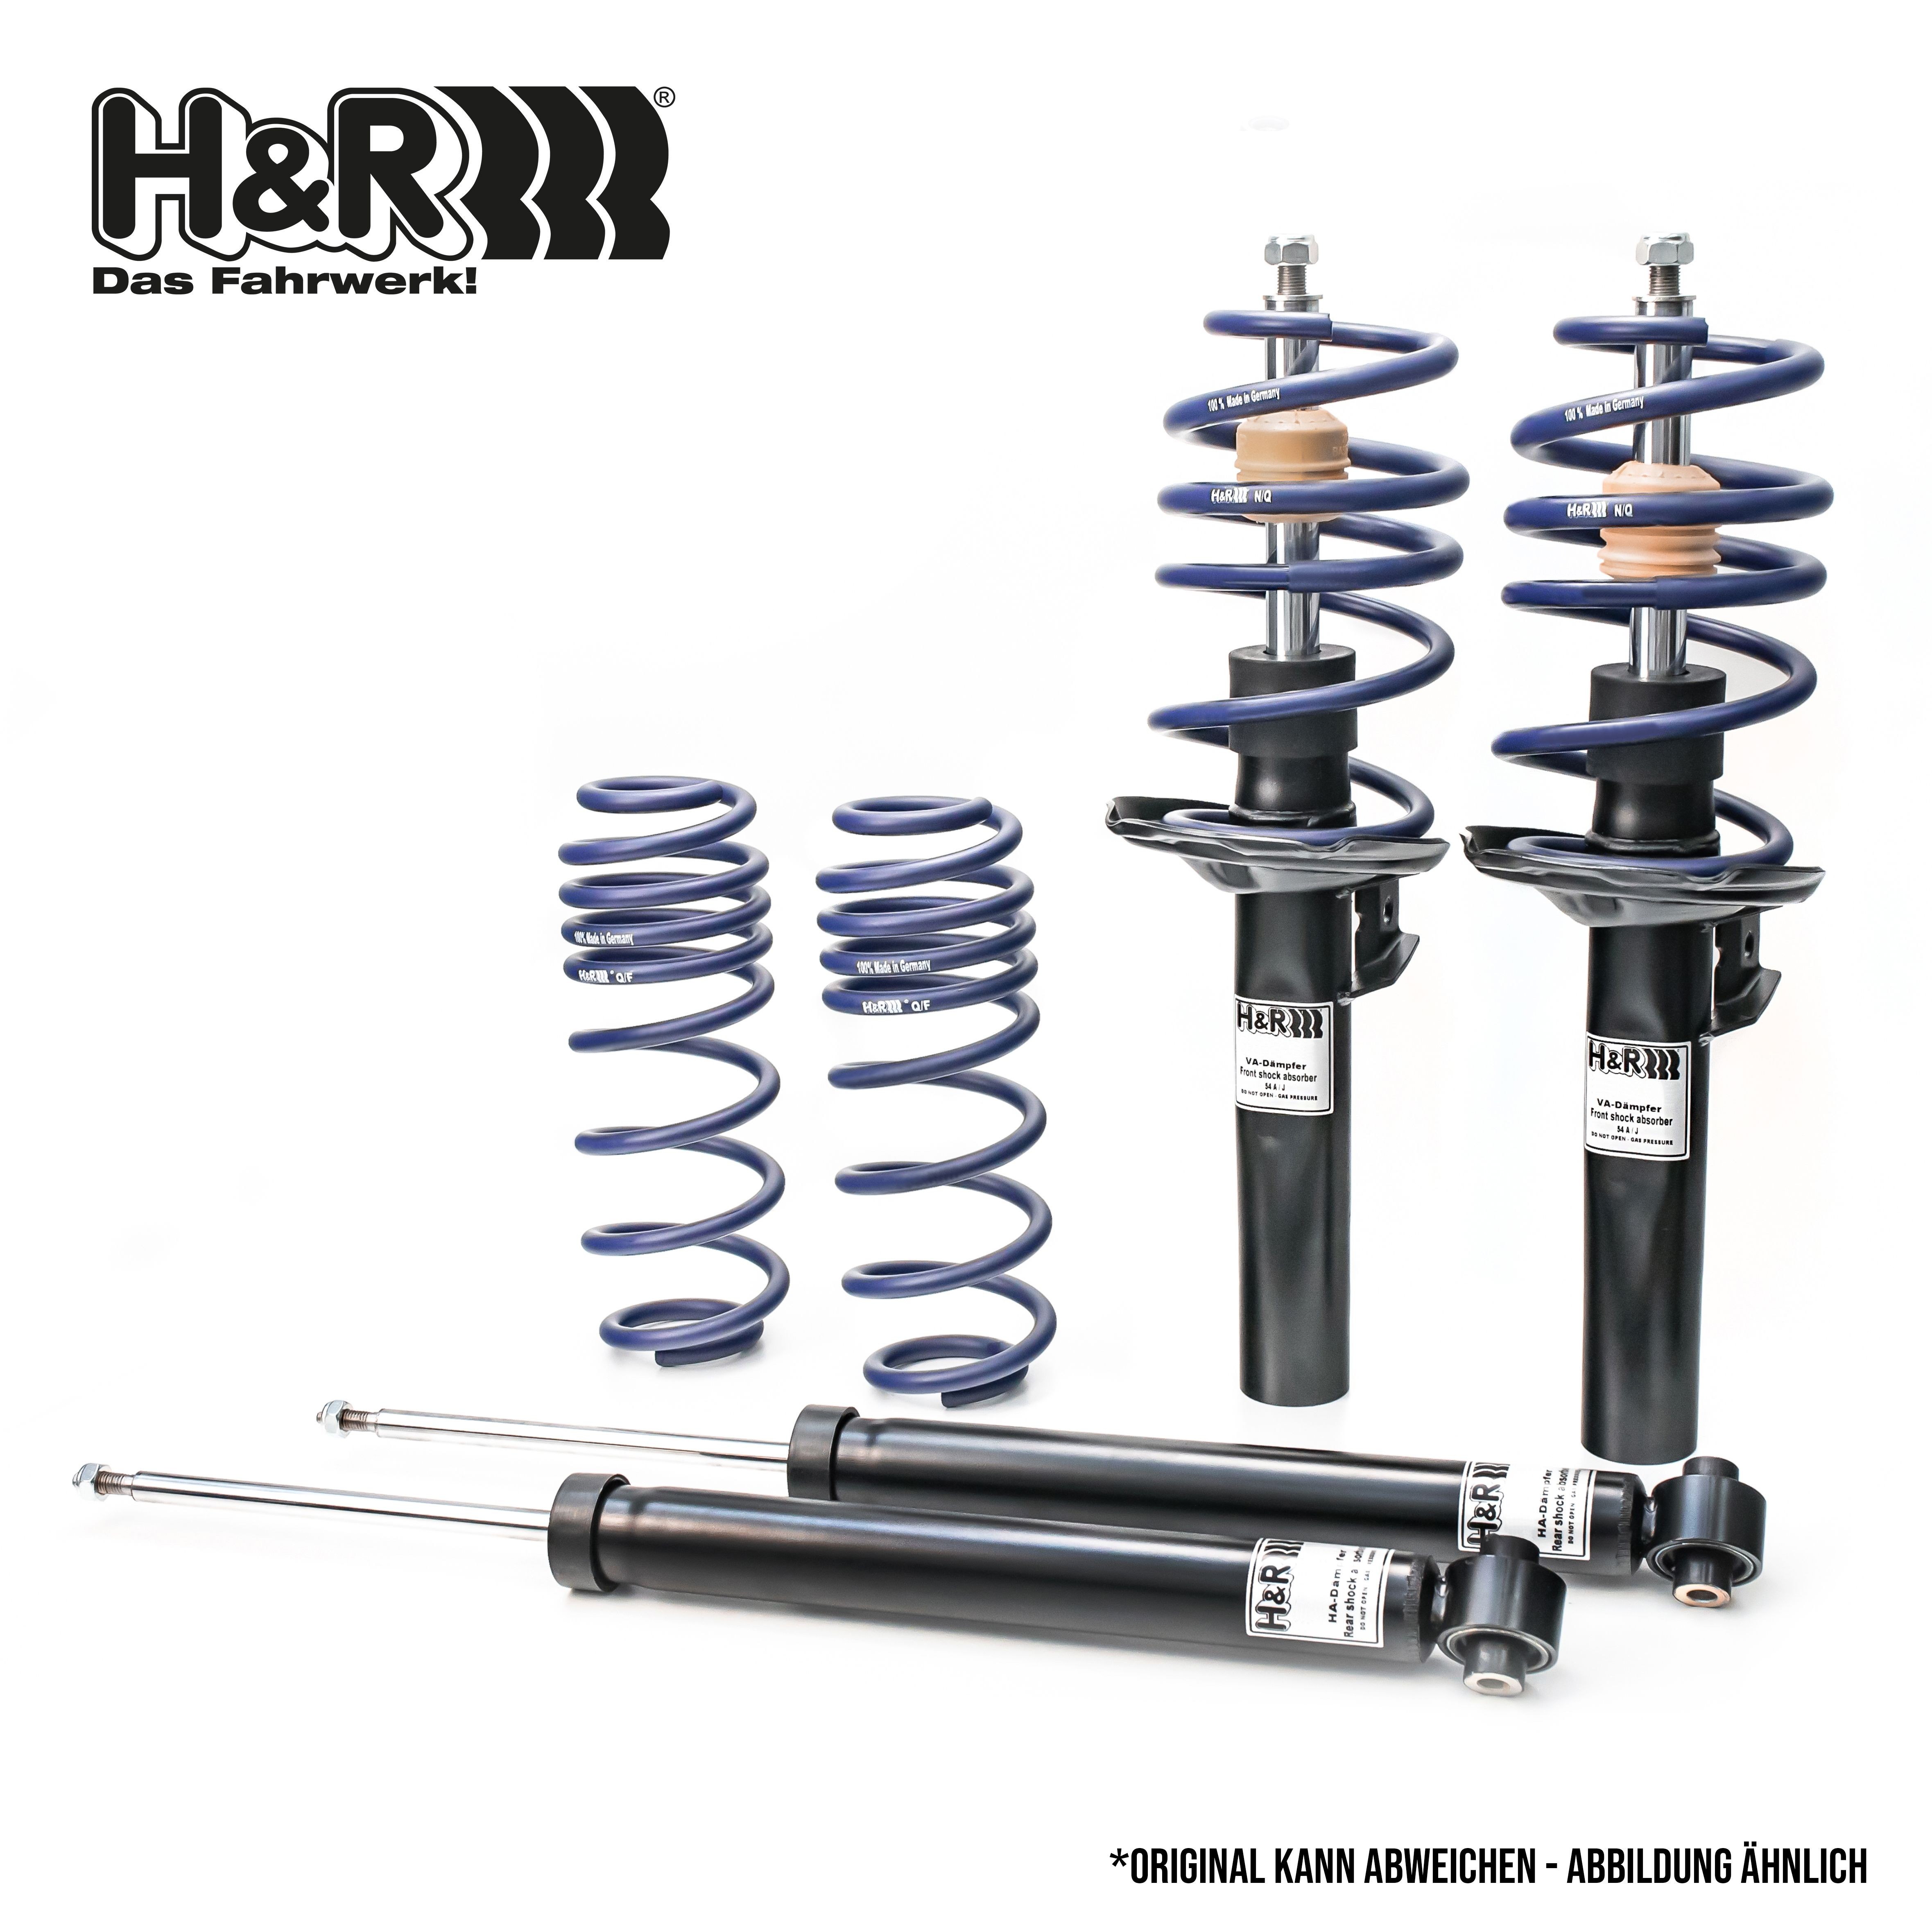 H&R Shock absorber set 40926-2 buy